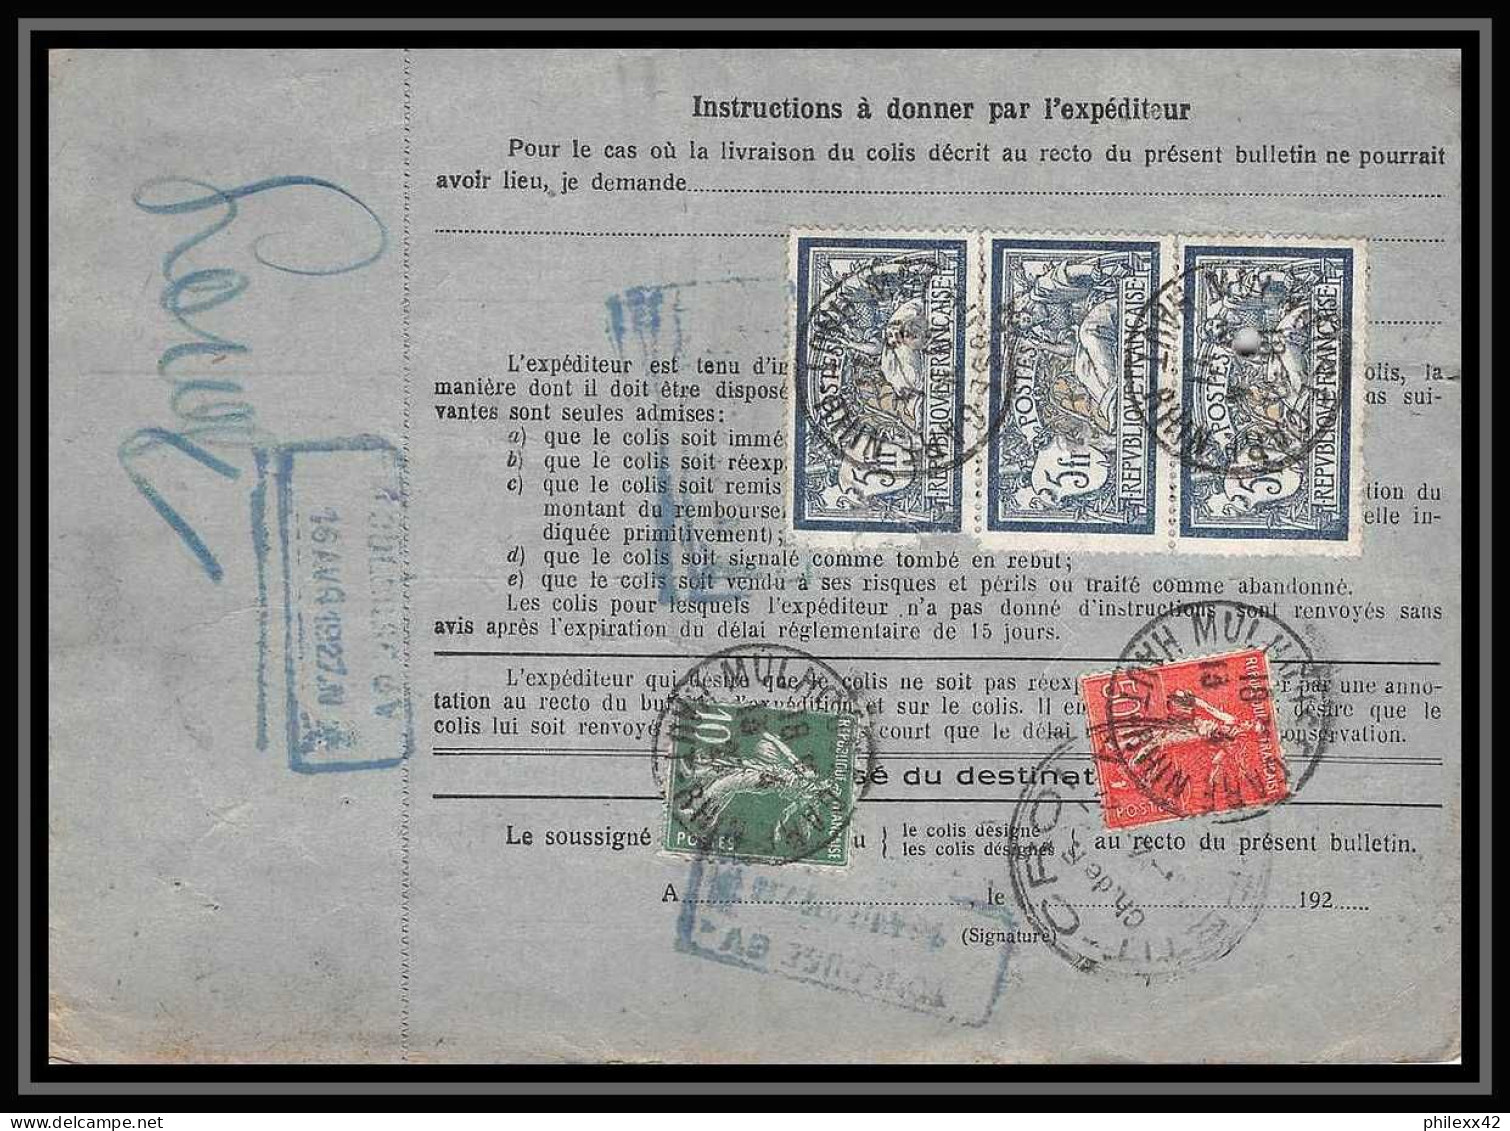 25069 Bulletin D'expédition France Colis Postaux Fiscal Haut Rhin - 1927 Mulhouse Merson 123 X 3 Valeur Déclarée - Storia Postale